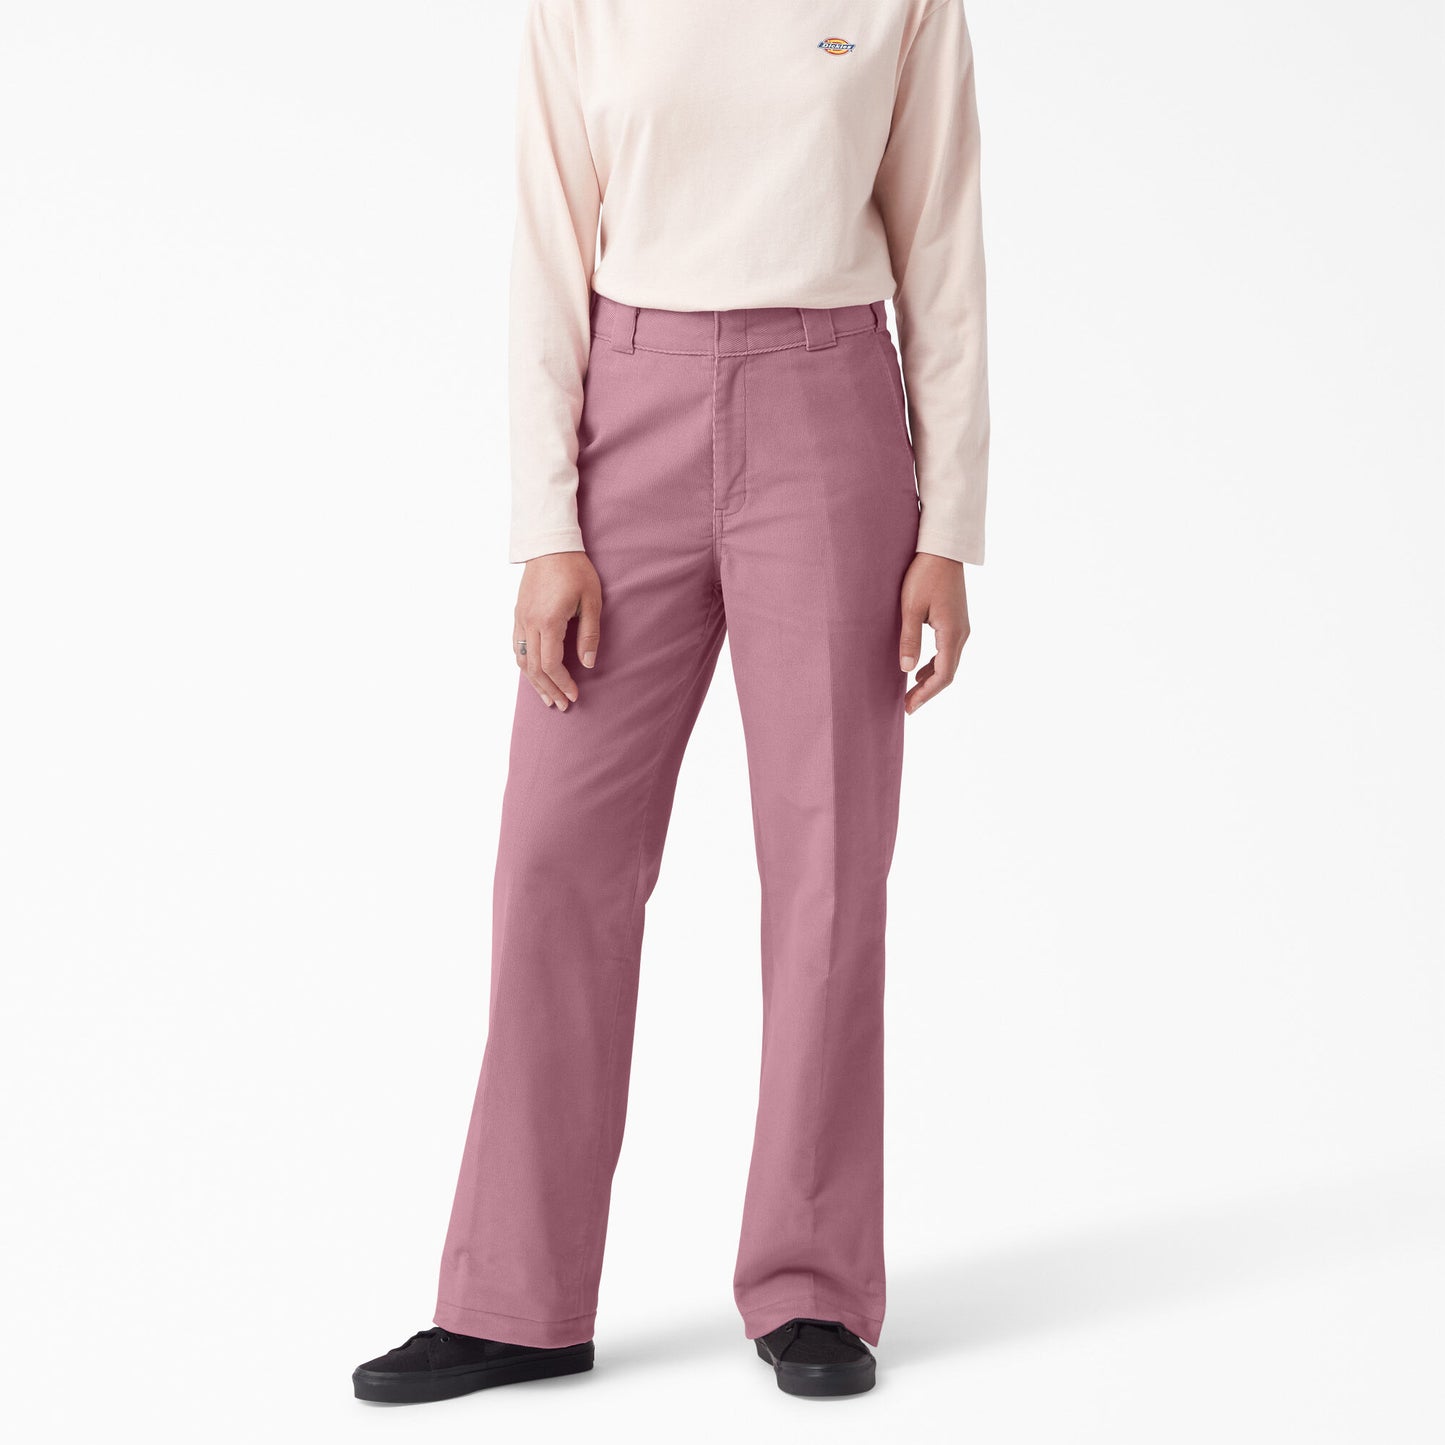 Dickies Women's Halleyville Corduroy Pant - Foxglove Pink